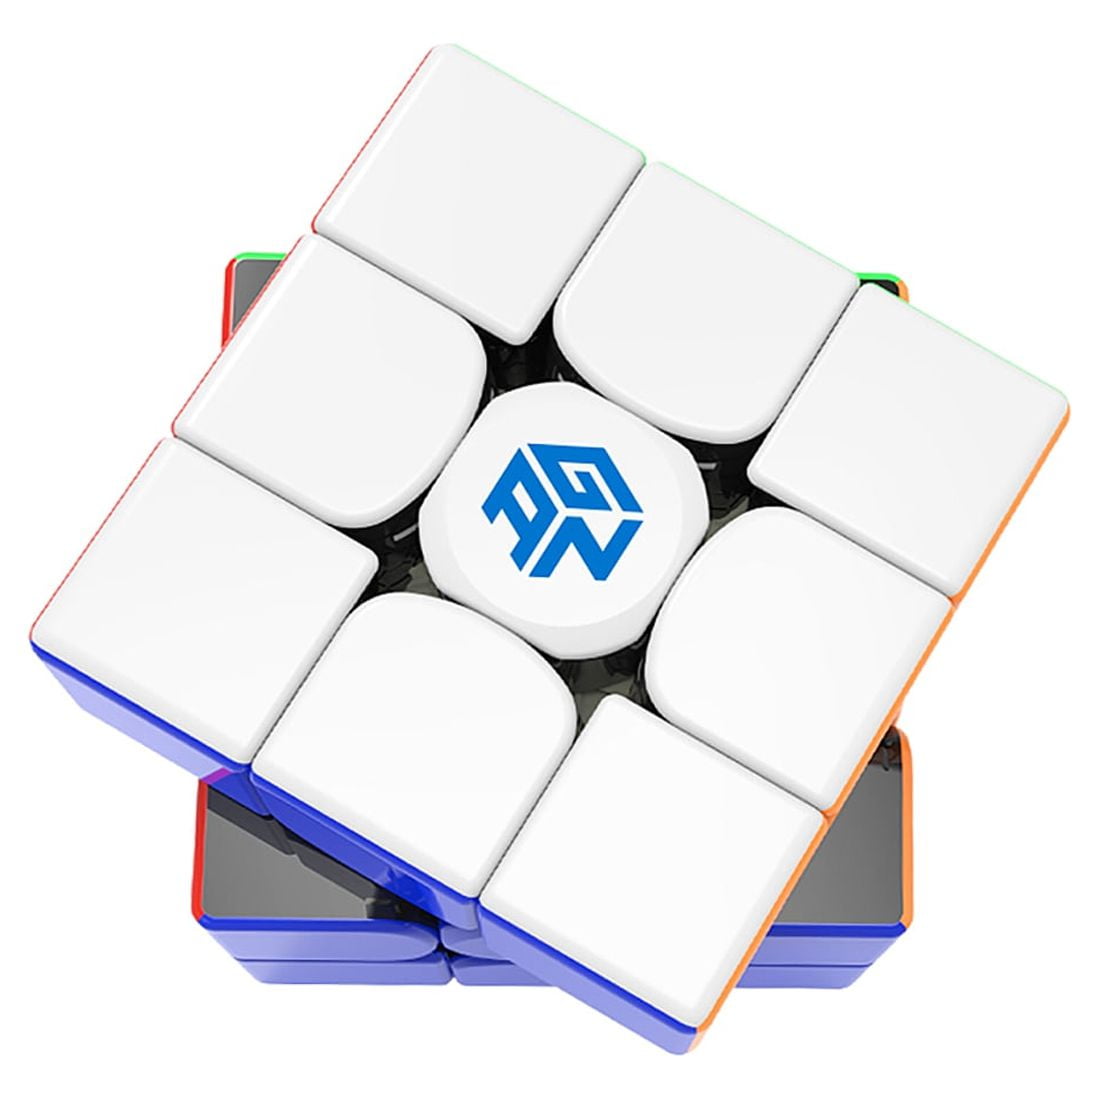 GAN Cube 356 R S, 3x3 Speed Cube Gans 356RS Magic Cube(Stickerless)